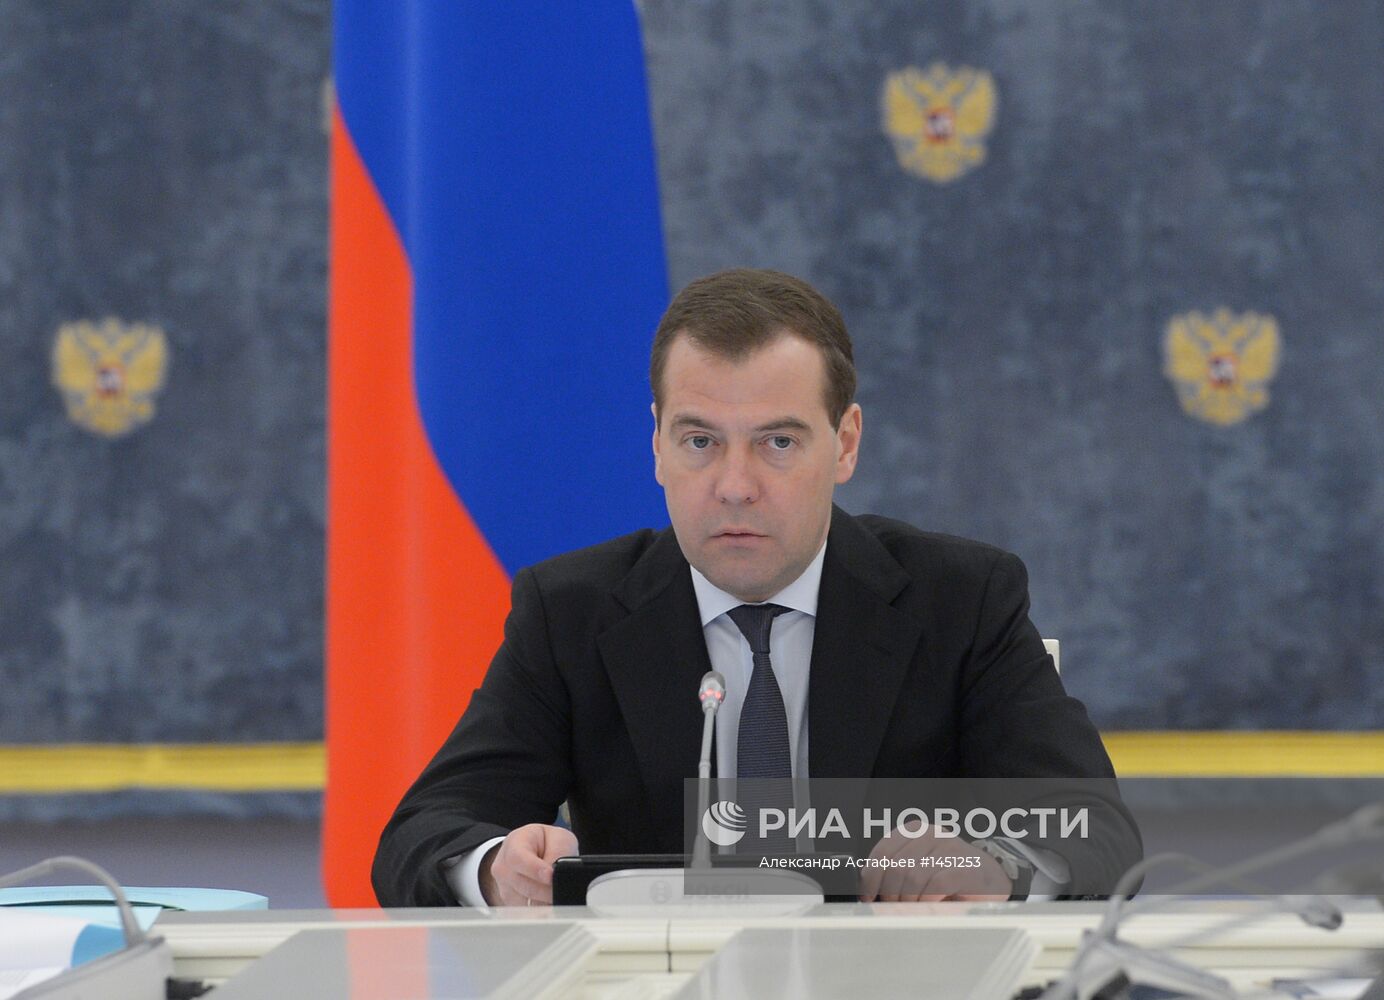 Д.Медведев провел заседание правительственной комиссии в Горках